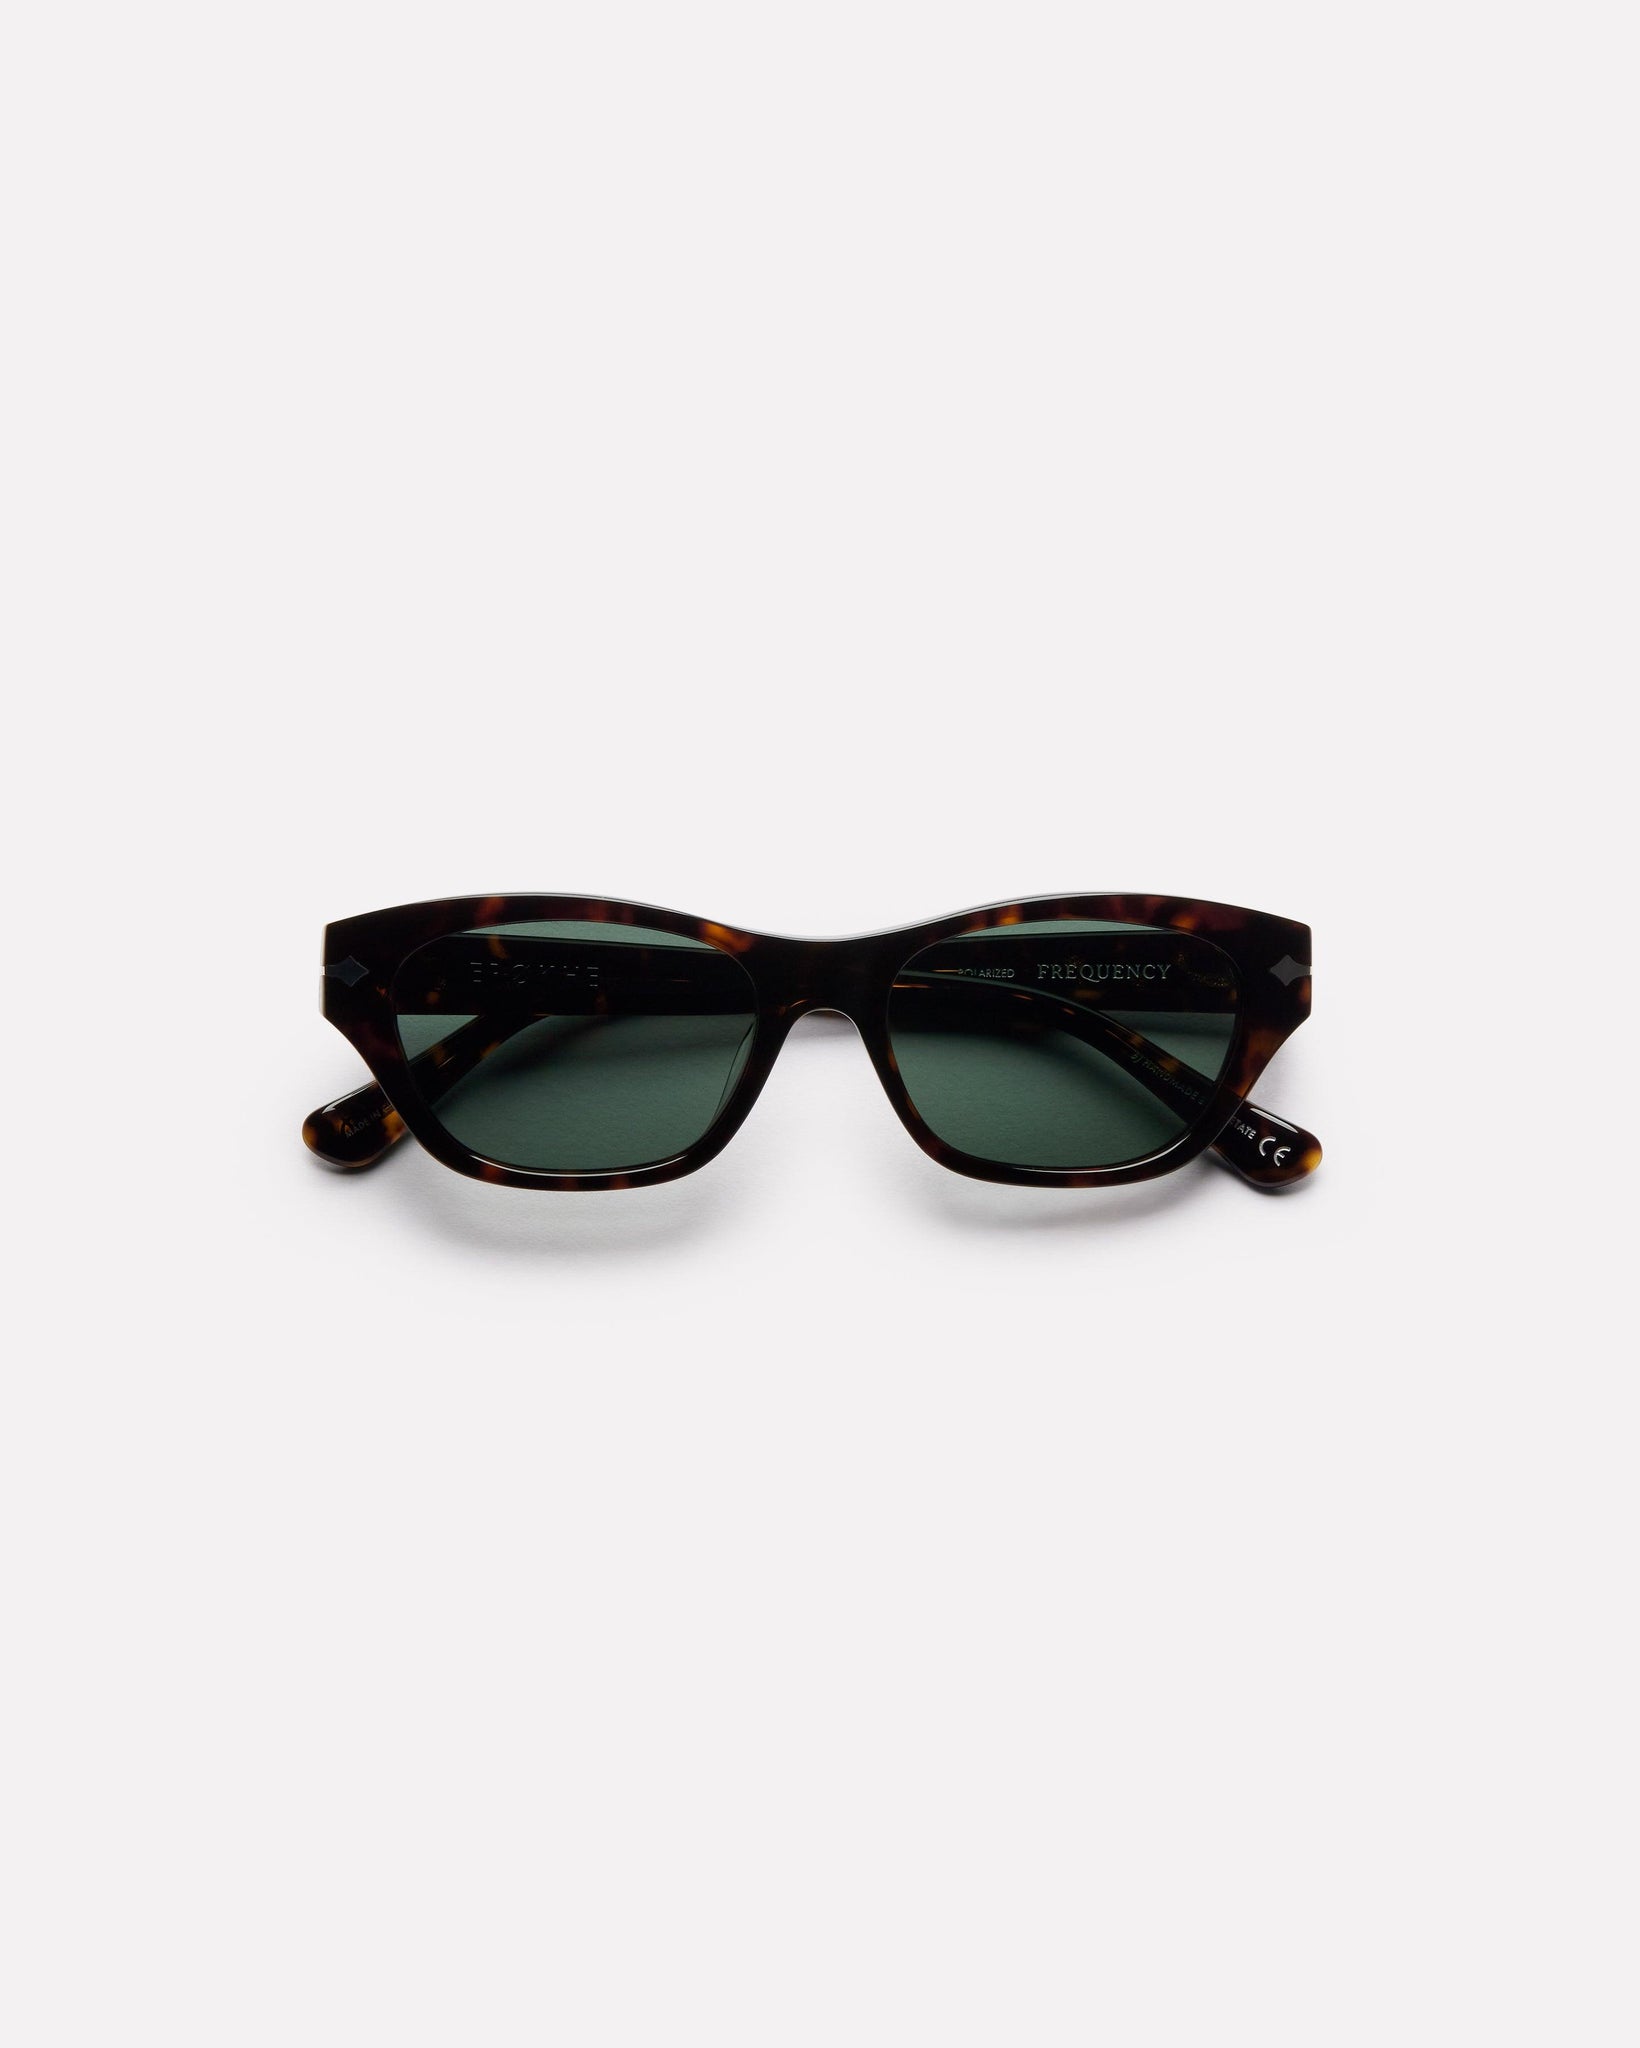 Frequency - Tortoise Polished / Green Polarized - Sunglasses - EPOKHE EYEWEAR